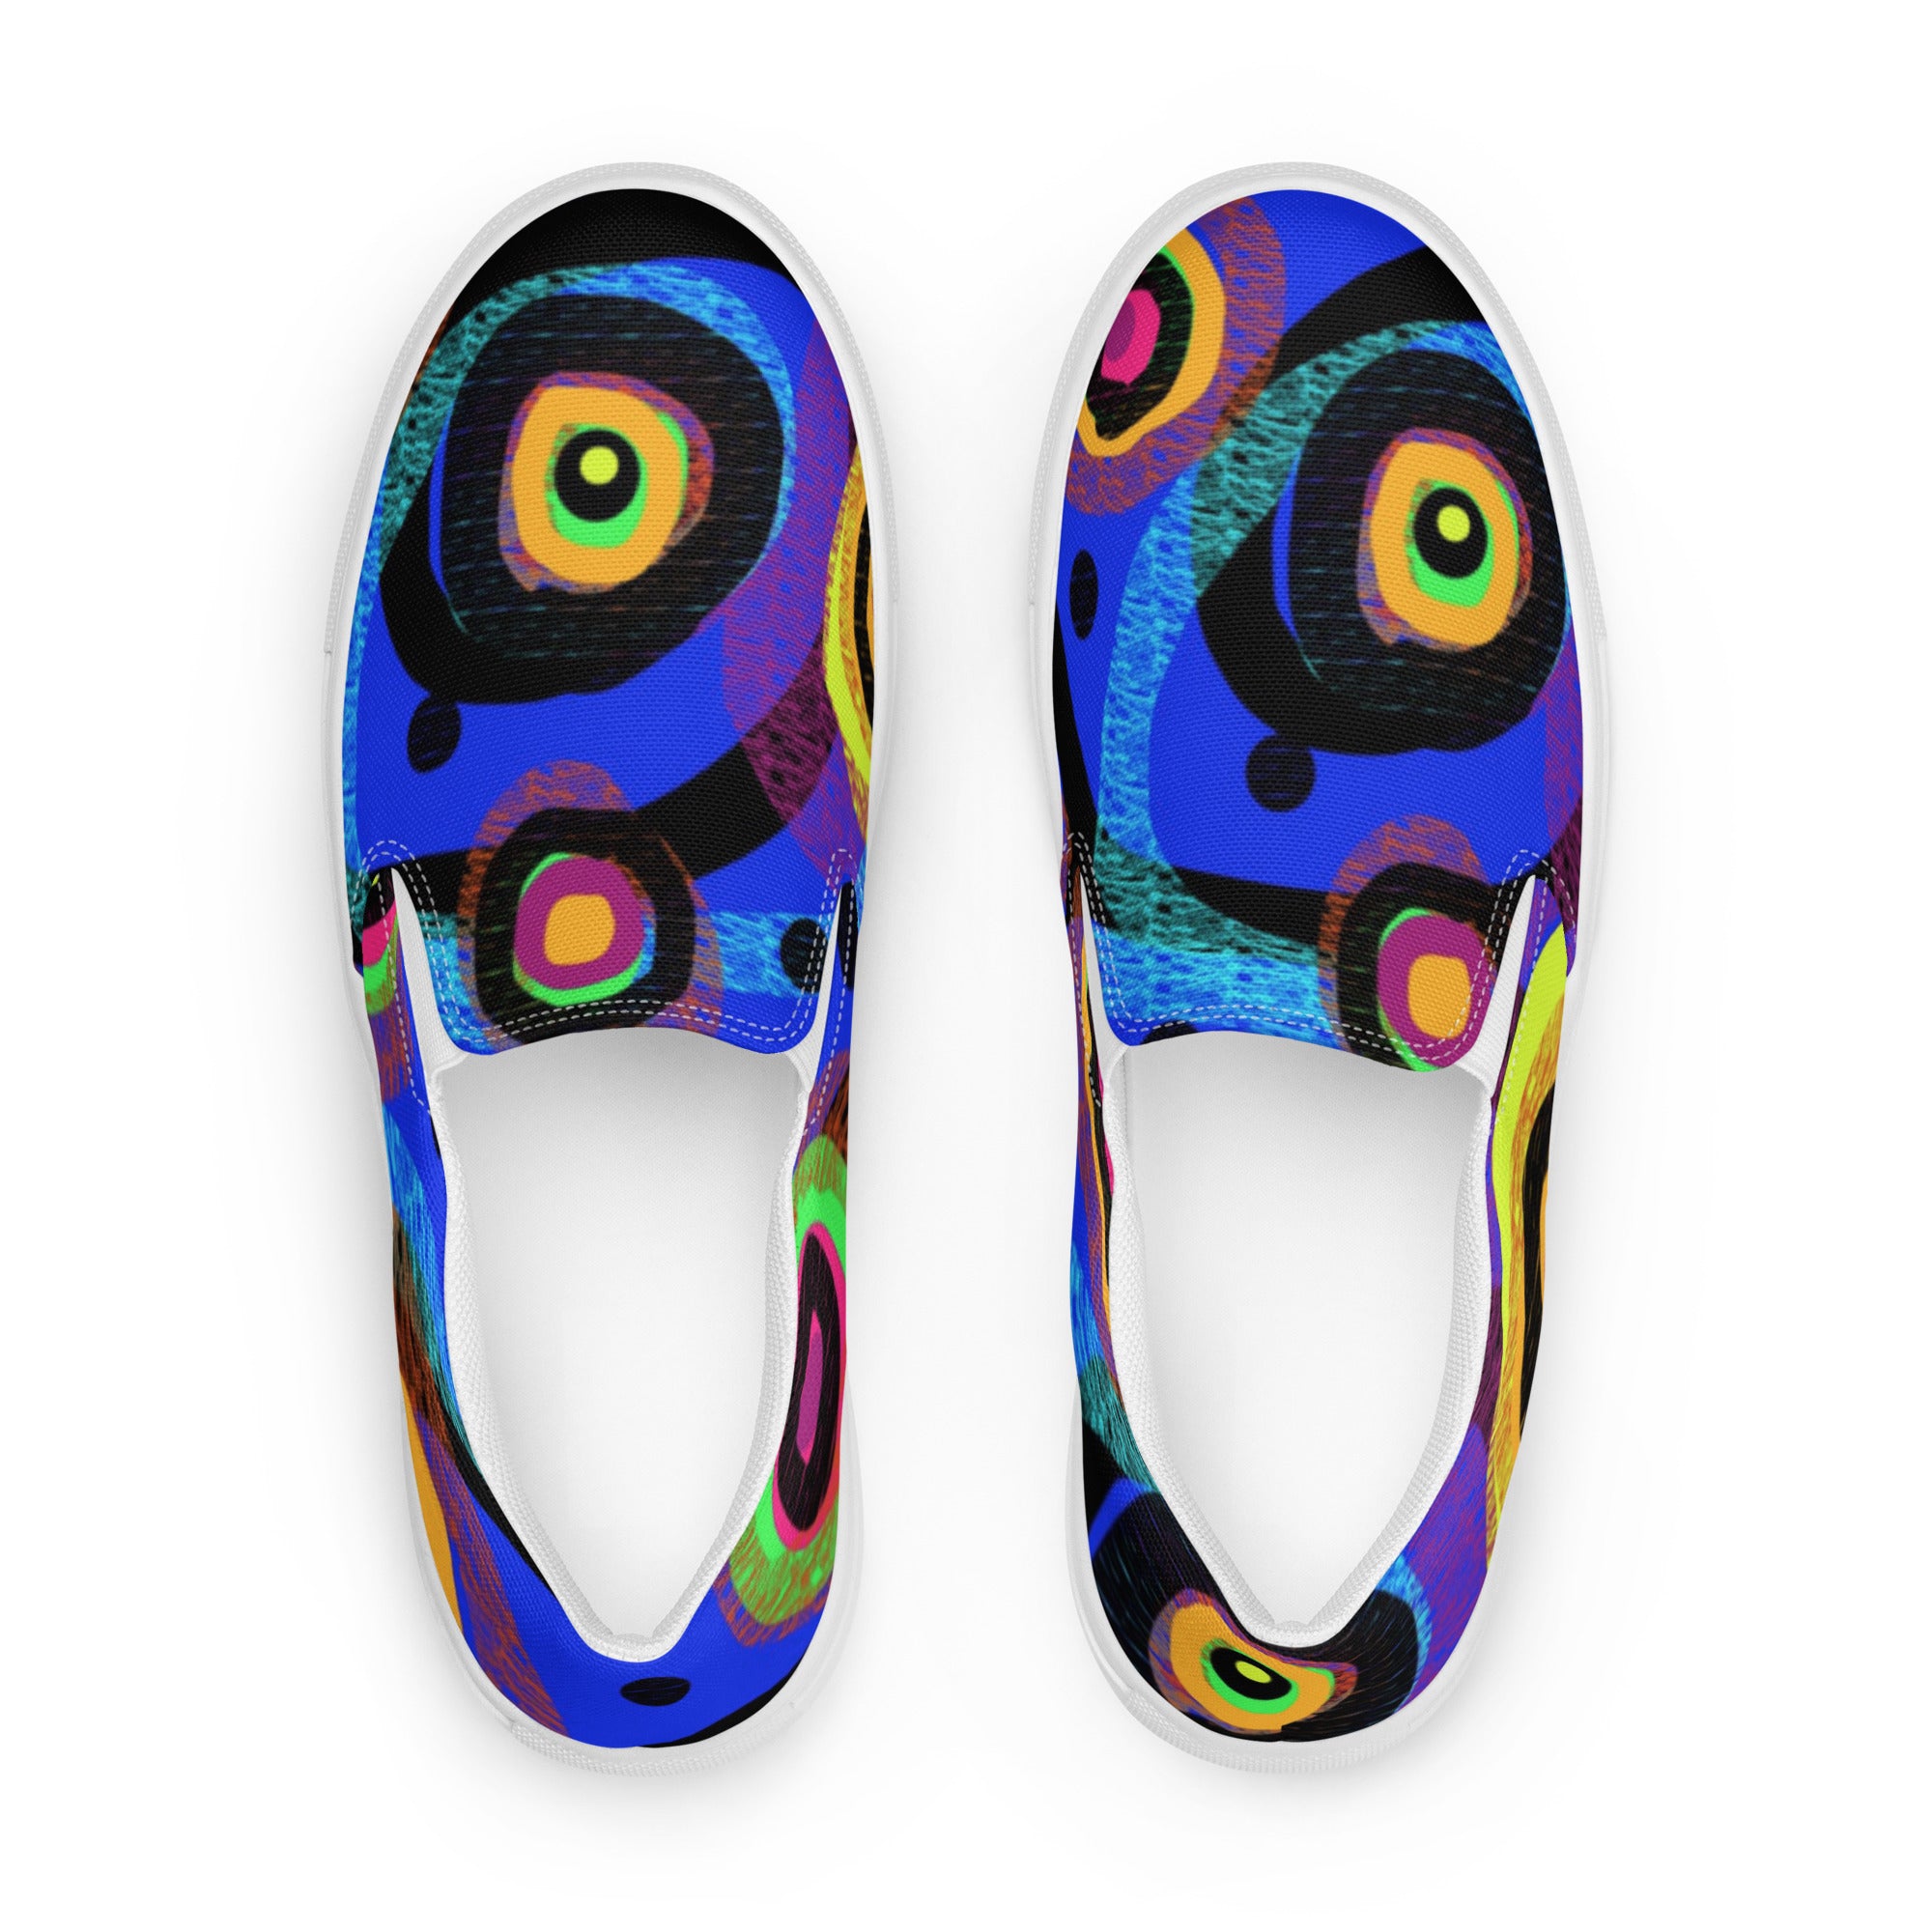 Patrick Swayze Men’s slip-on canvas shoes